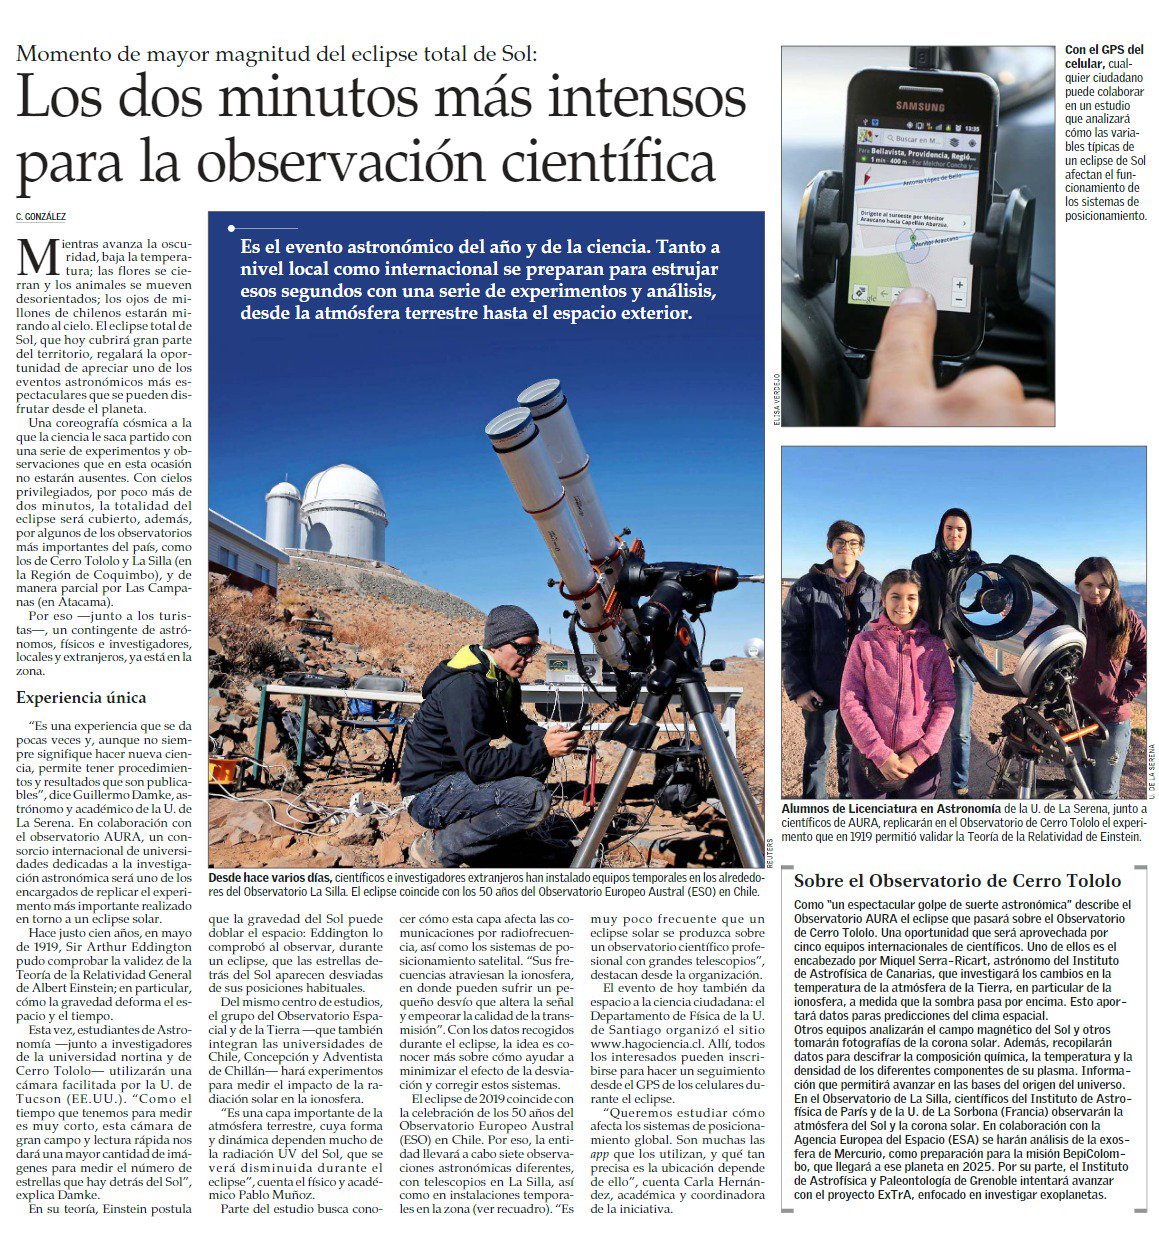 Diario El Mercurio destaca dos experimentos ULS durante el #Eclipse2019